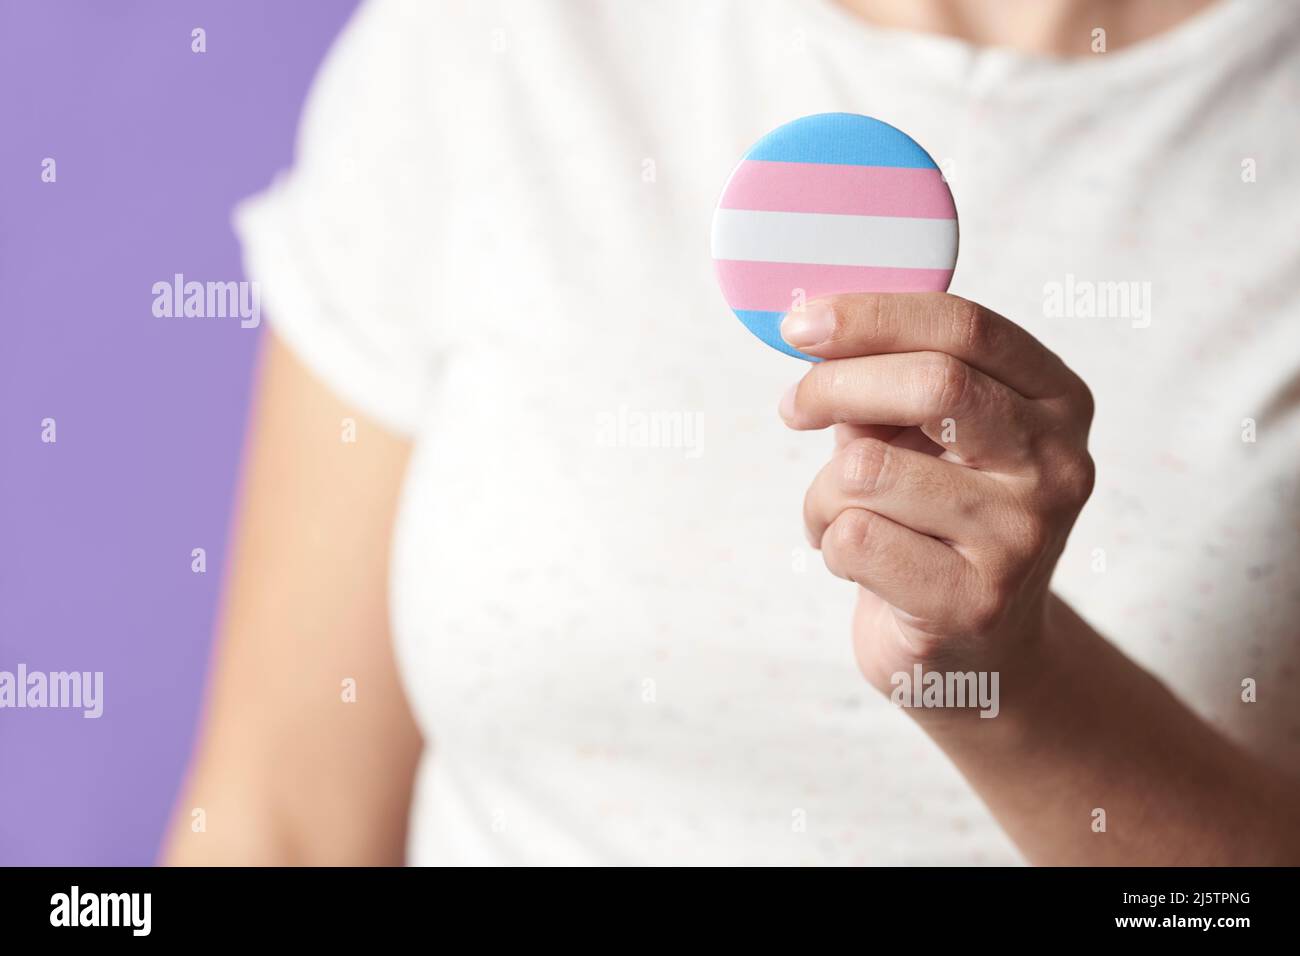 Persona non riconoscibile che tiene in mano un badge o un pin della bandiera della trasmissione. Concetti di orgoglio di identità, diversità di genere, uguaglianza e non discriminazione. Foto Stock